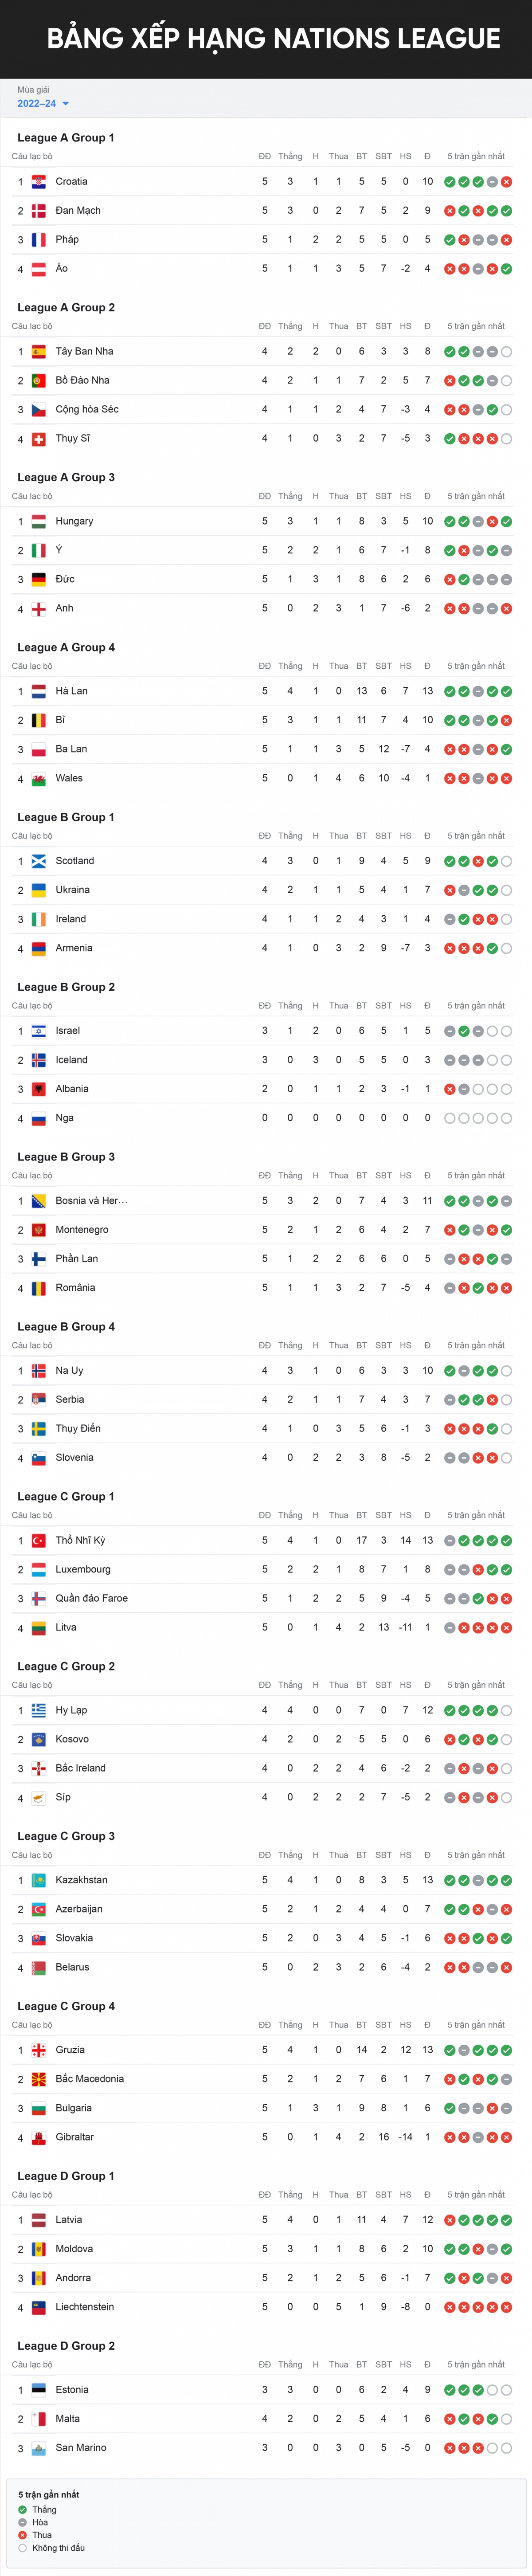 Bảng xếp hạng Nations League mới nhất: Hungary tiếp tục gây sốc - Ảnh 1.